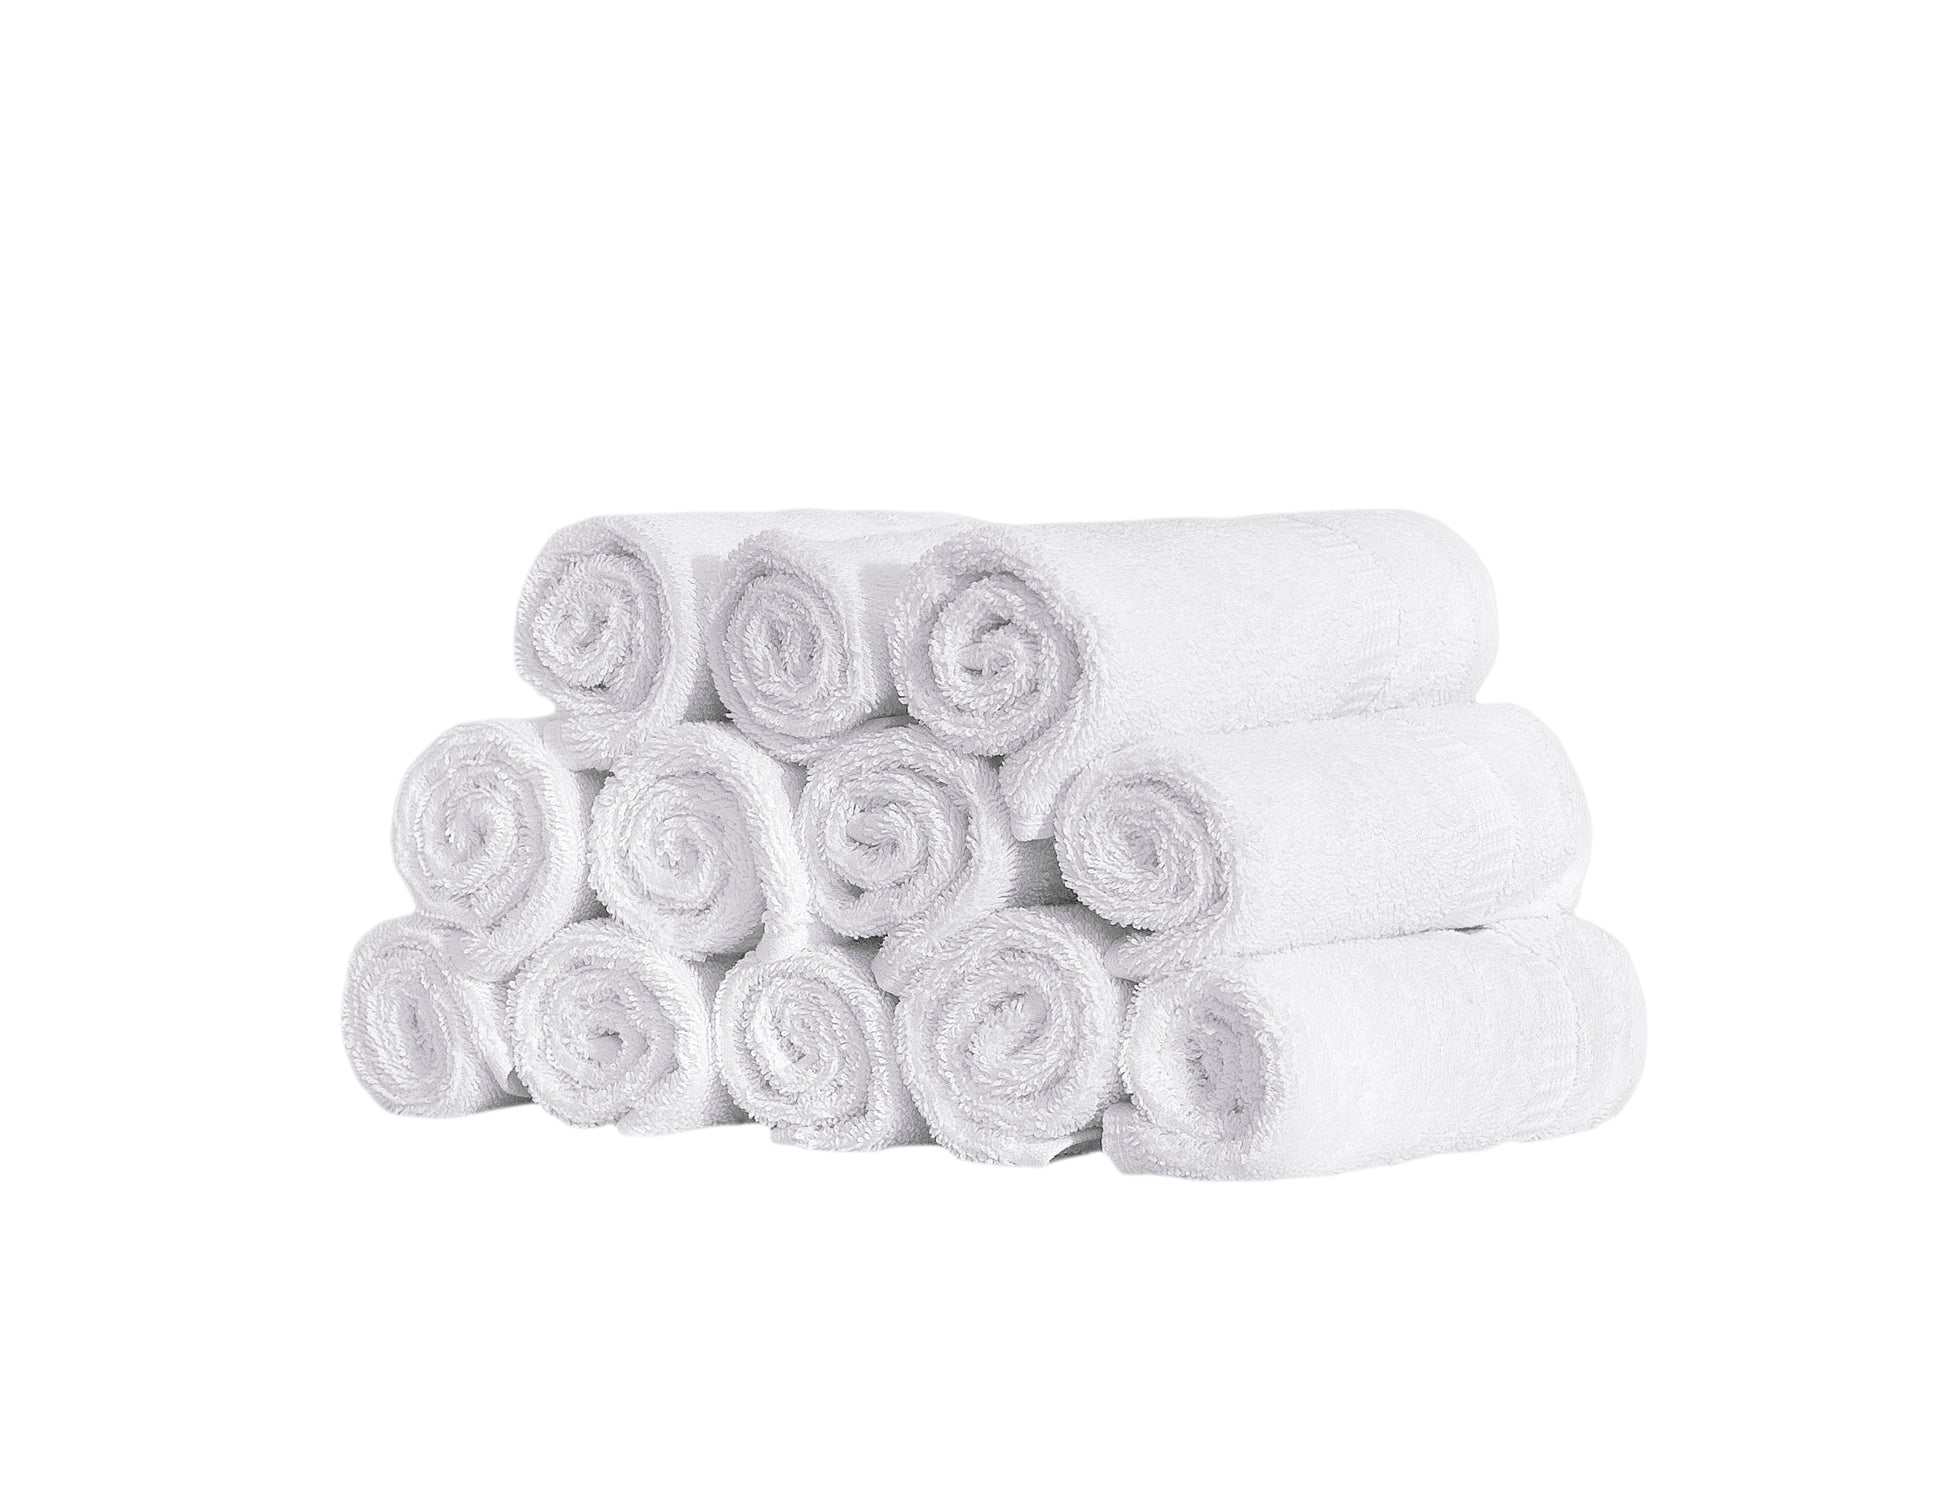 White Classic Luxury 100% Cotton Washcloths Set of 12 - 13x13 White